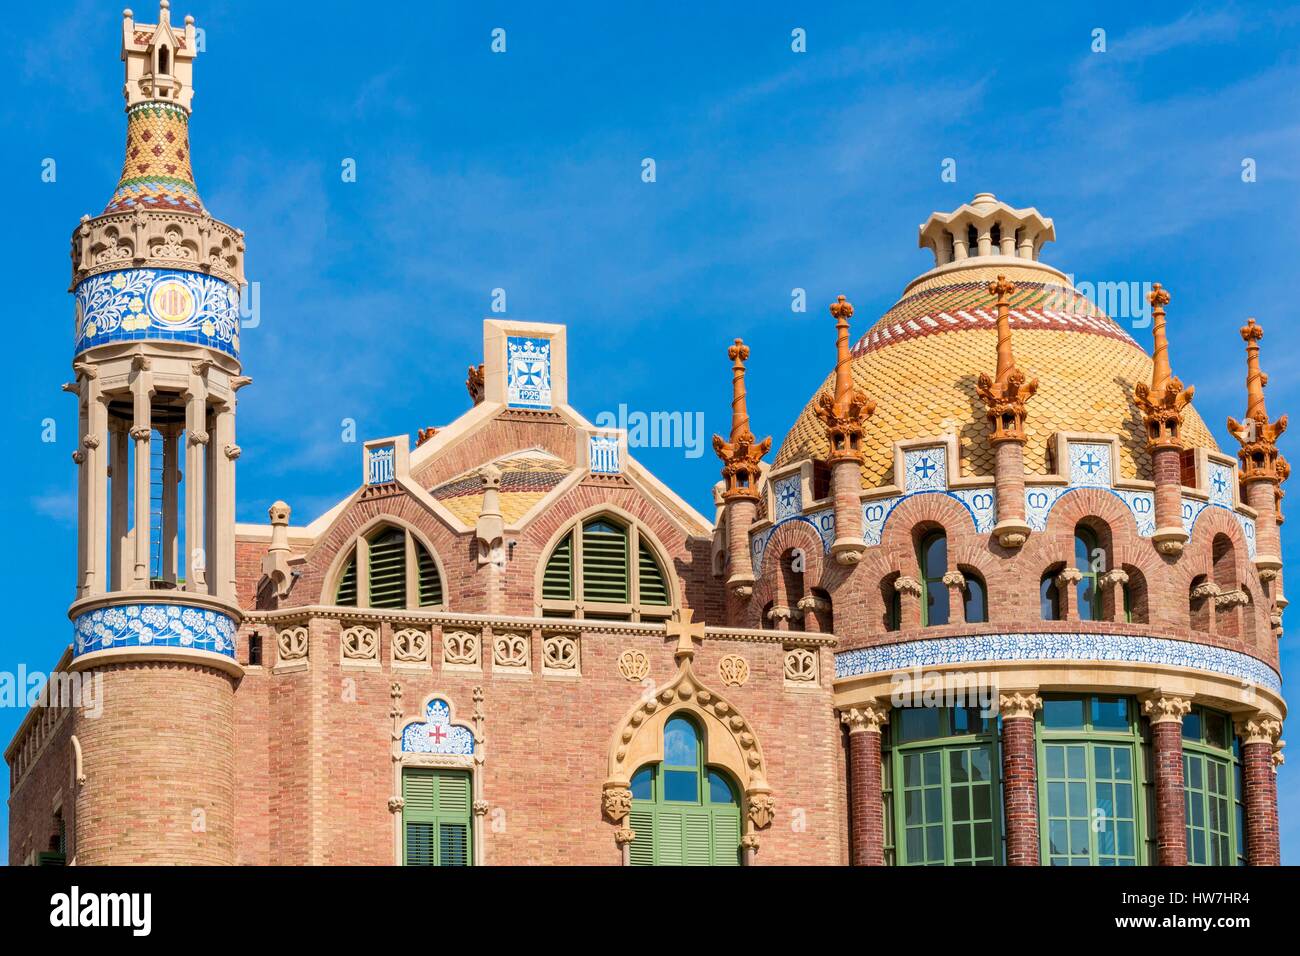 Espagne, Catalogne, Barcelone, El Guinardo, l'hôpital Sant Pau conçu en 1901 par l'architecte Catalan Lluis Domenech i Montaner, Sant Pau, site du patrimoine mondial de l'UNESCO depuis 1997 est la plus grande du monde entier moderniste Banque D'Images